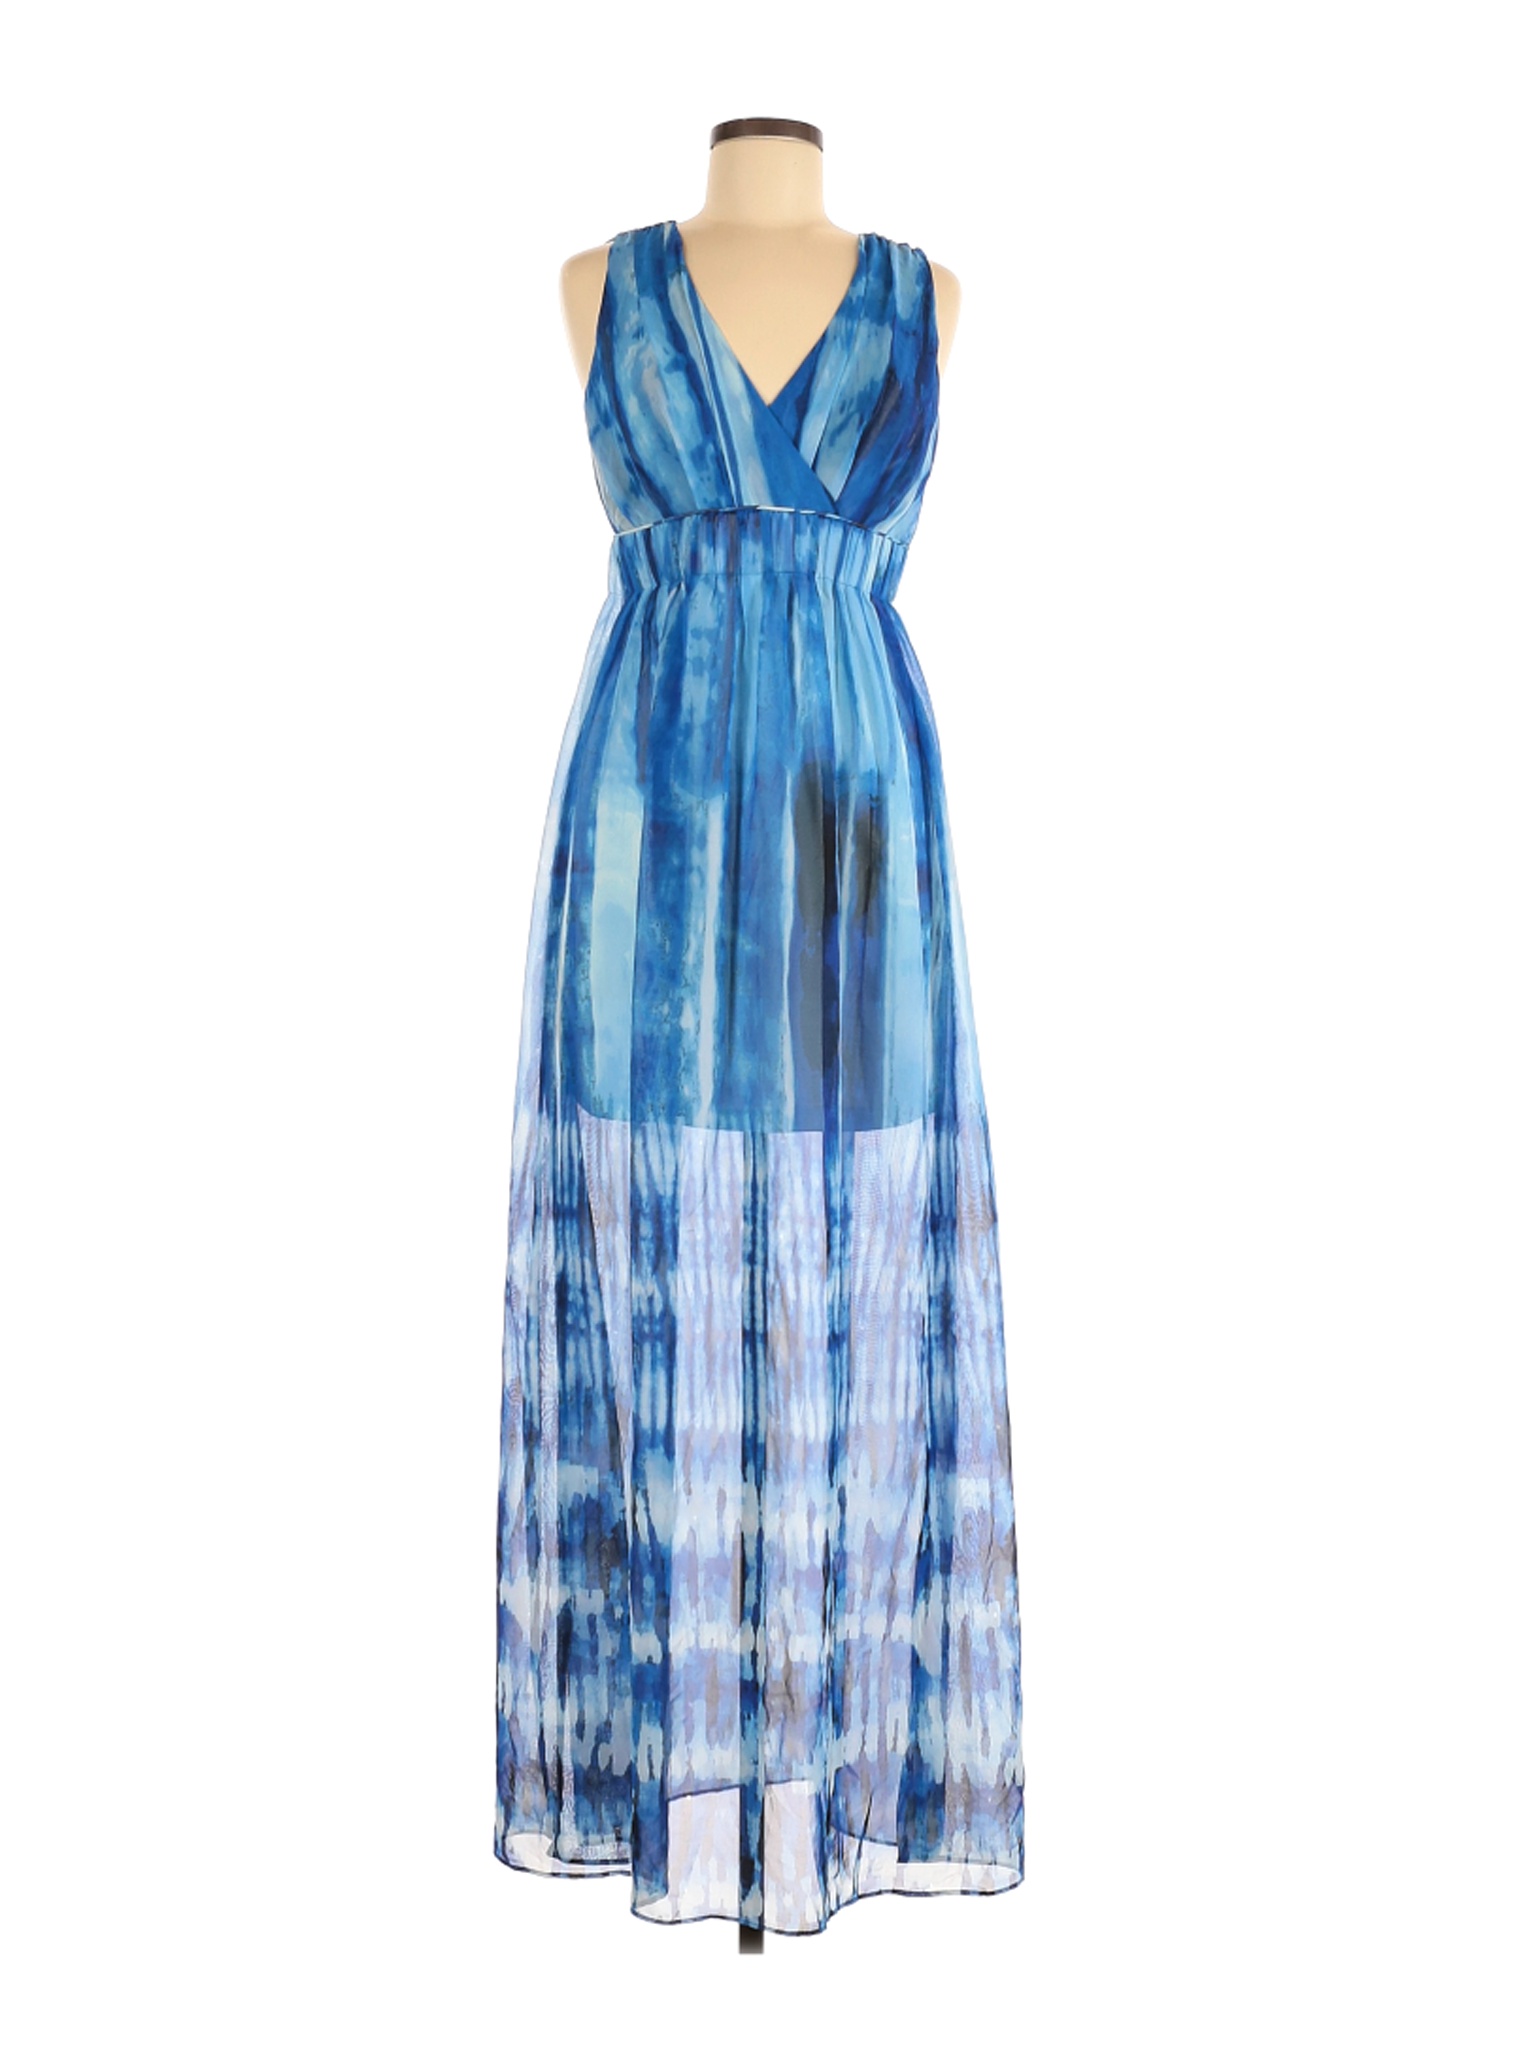 Calvin Klein Women Blue Cocktail Dress 6 | eBay